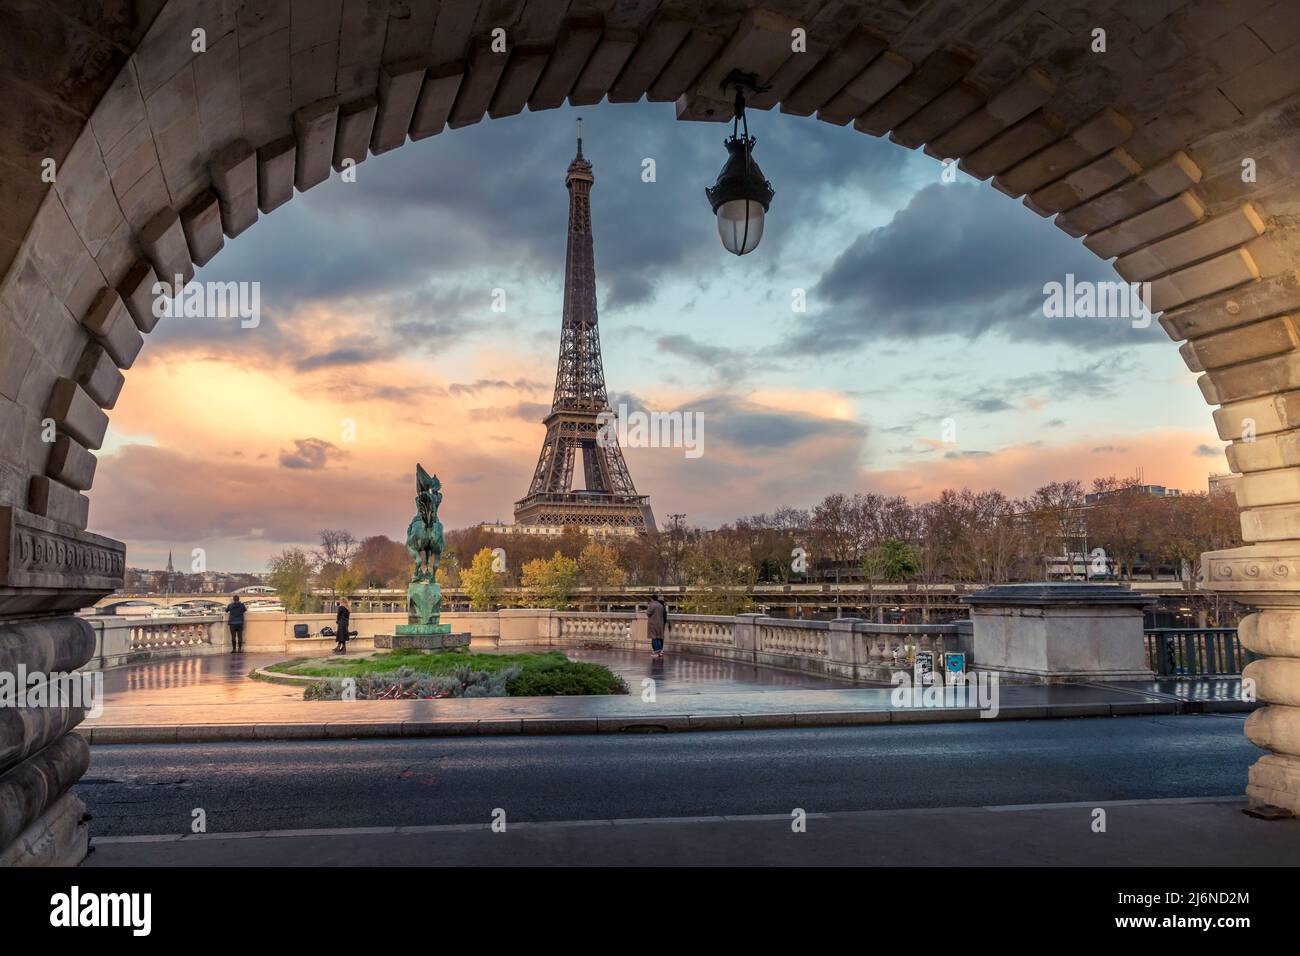 Paris, France - 19 novembre 2020 : Tour Eiffel vue de l'arche du pont Bir Hakeim à Paris Banque D'Images